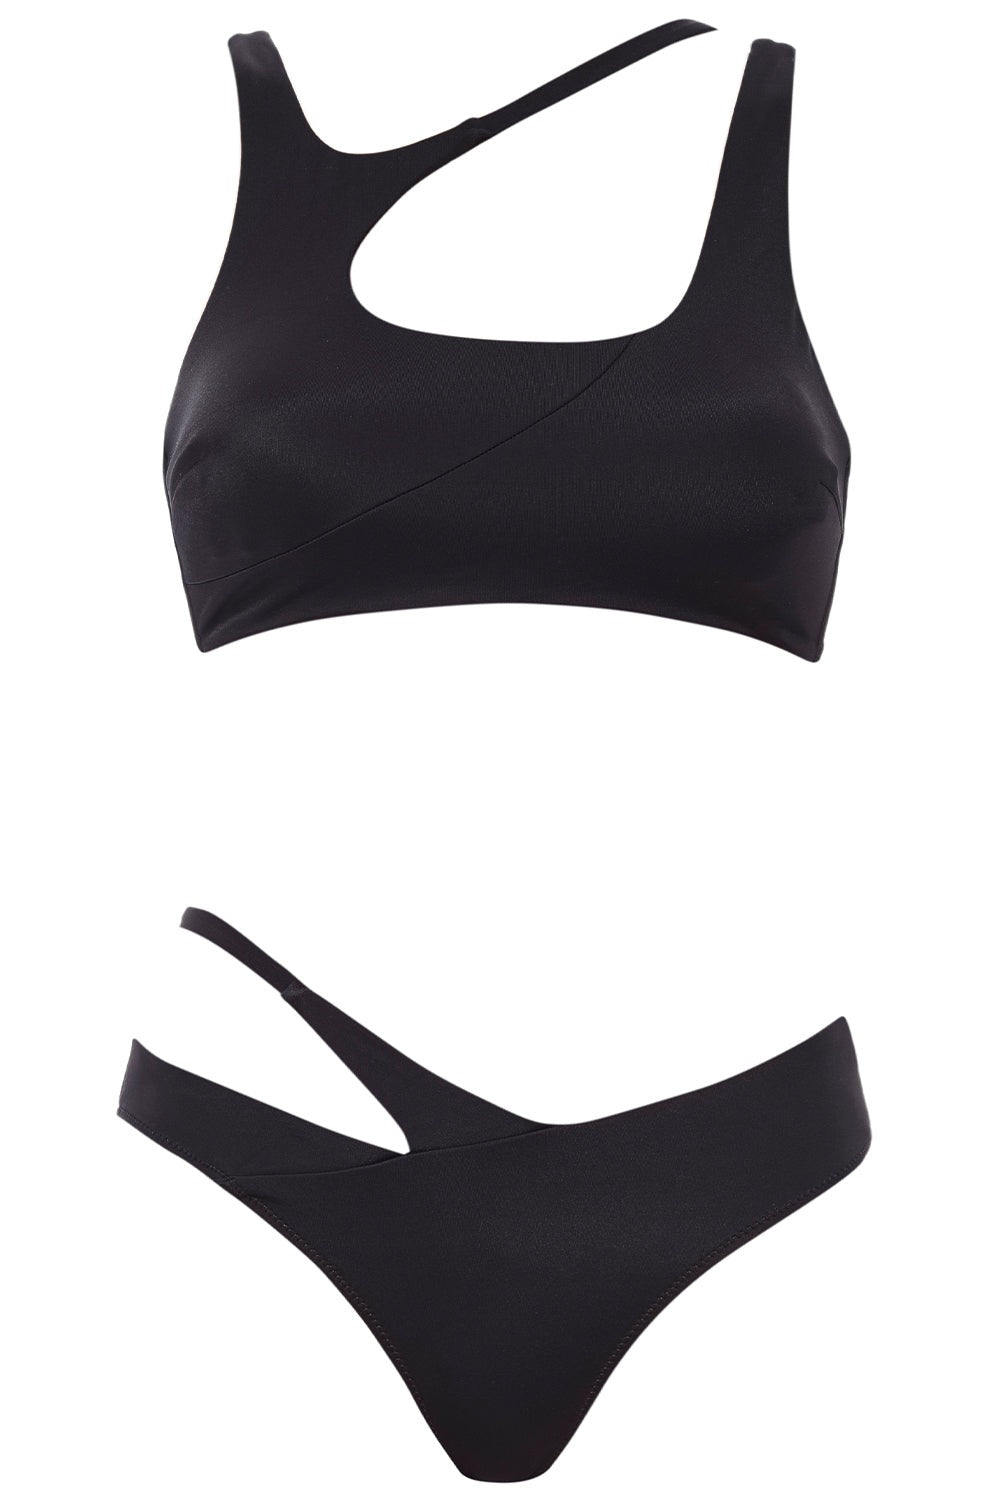 Asymmetric Bikini Black Set on white background front view.